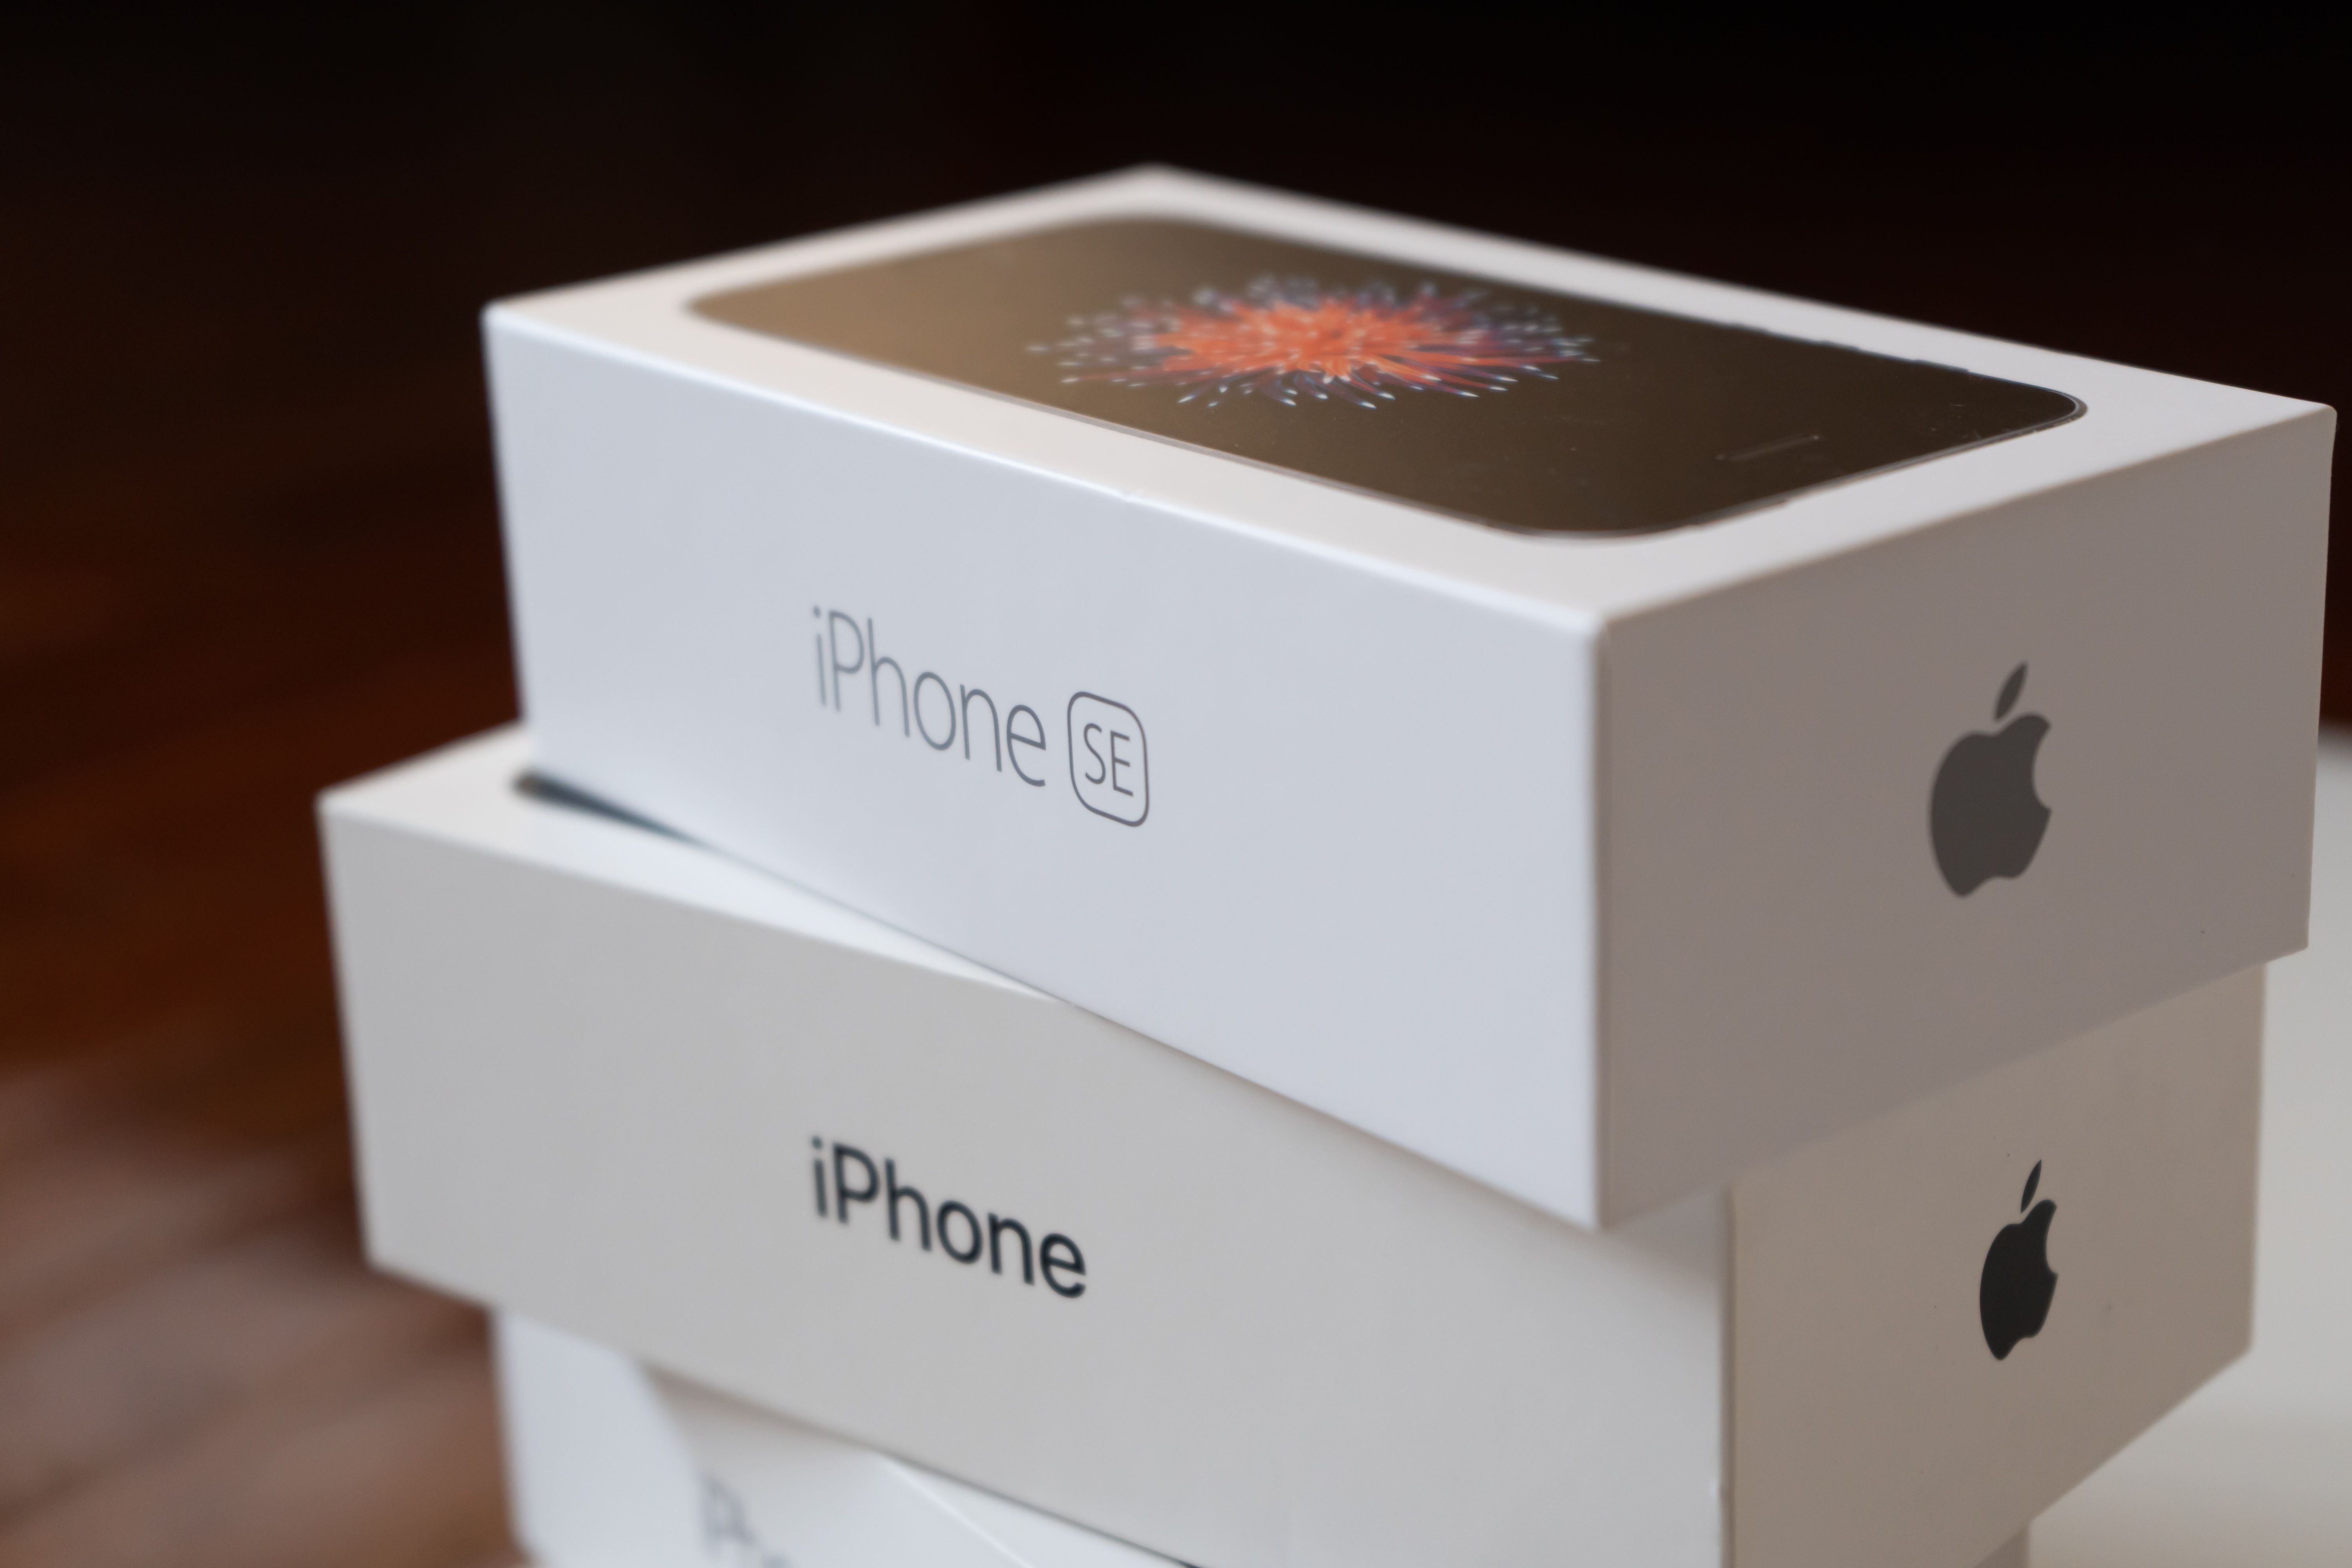 Meglehetősen kedvező árú iPhone-nal jelentkezhet az Apple